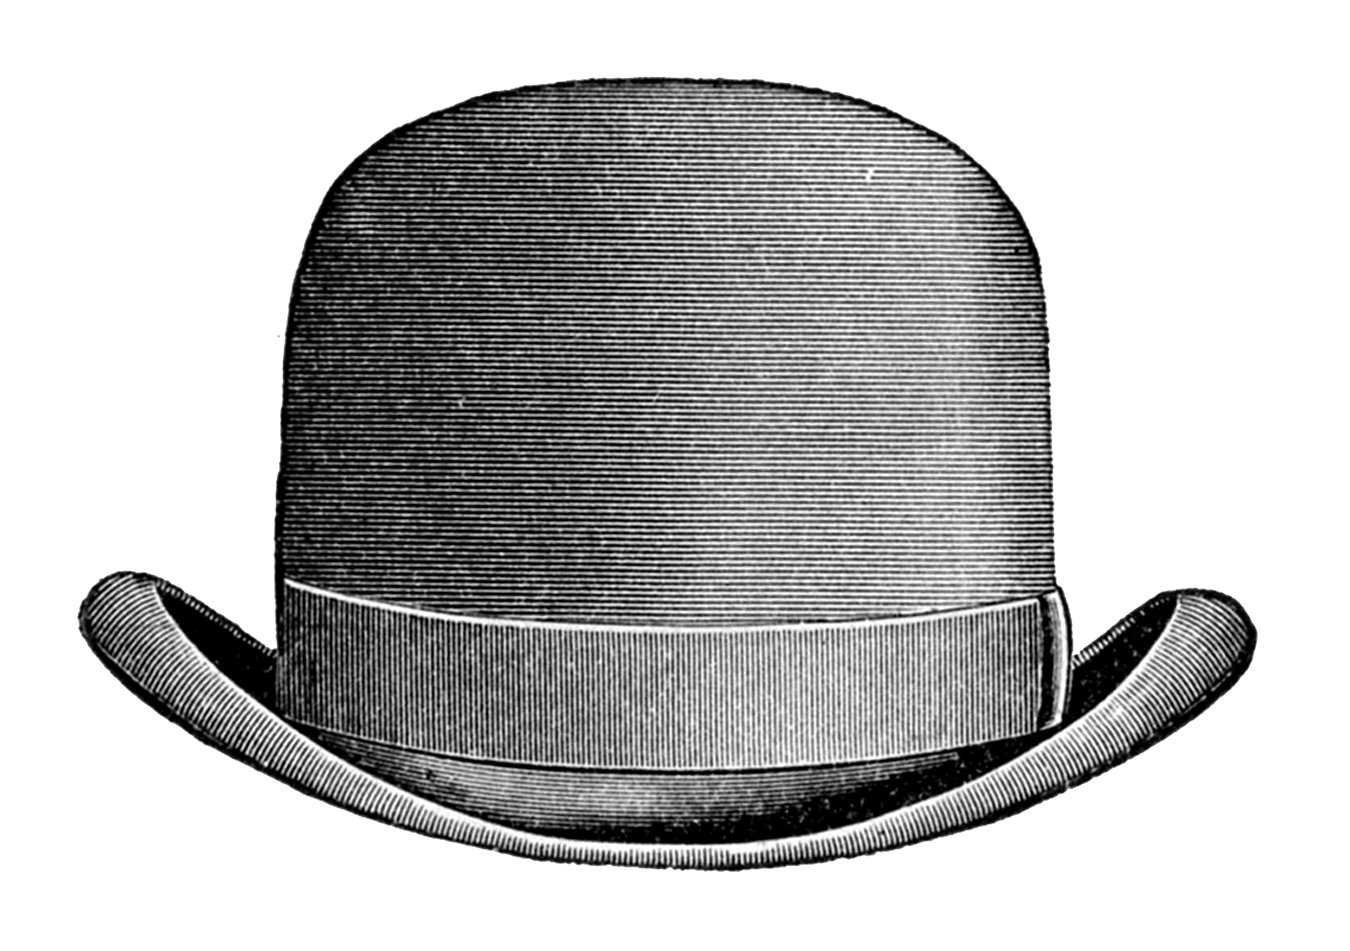 Hat clipart